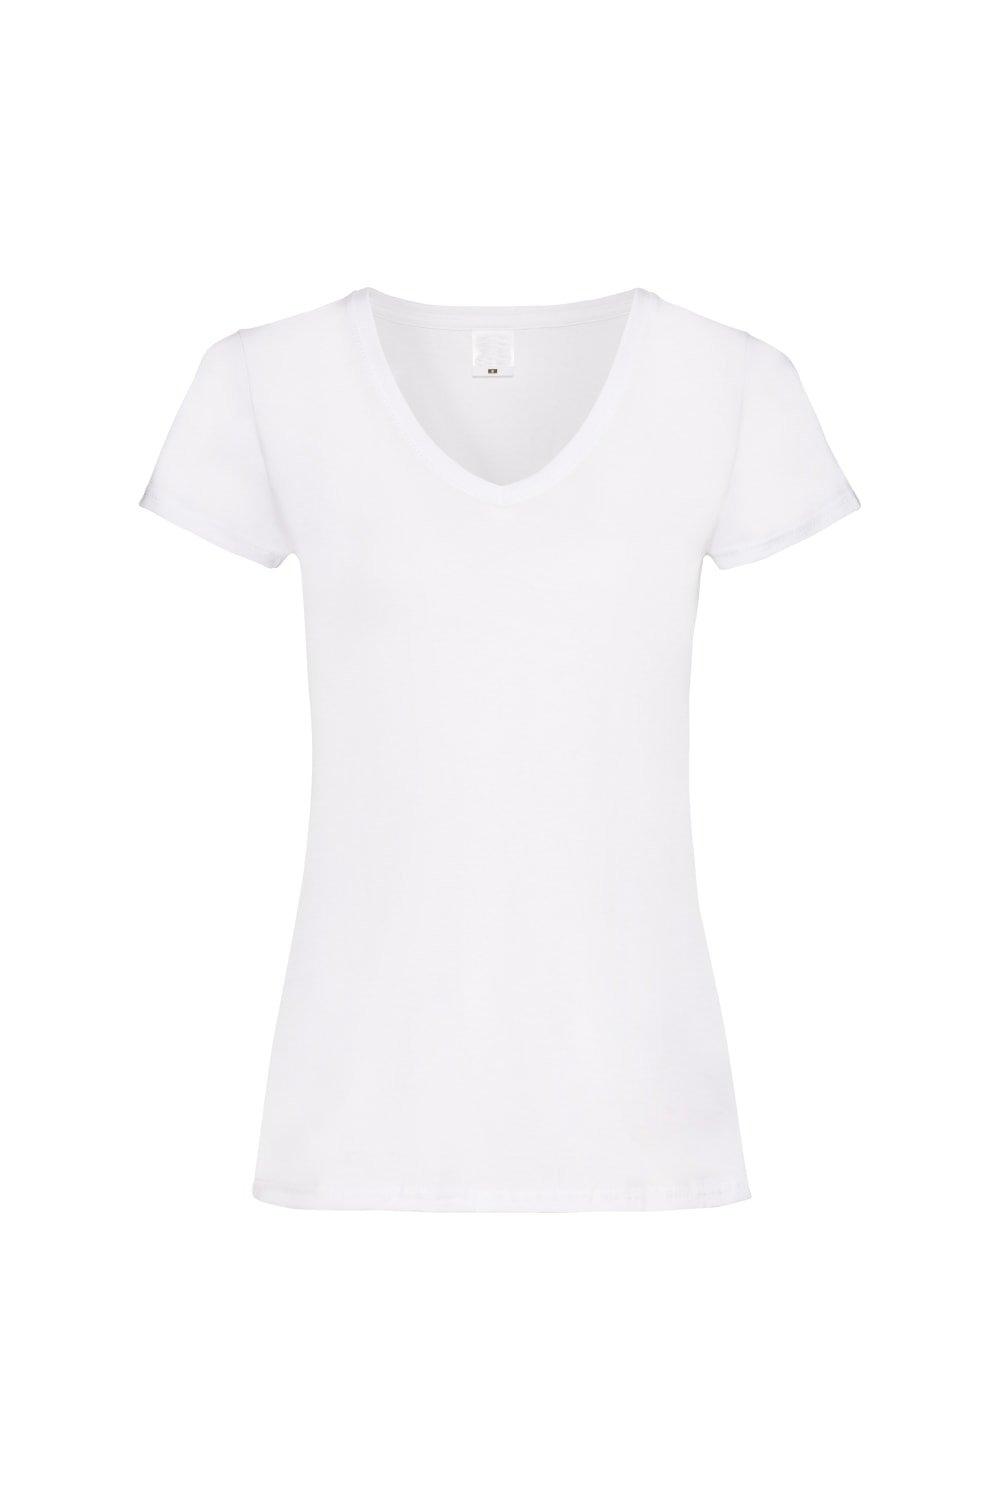 Повседневная футболка Value с V-образным вырезом и короткими рукавами Universal Textiles, белый мужская футболка доберман принт собака s серый меланж